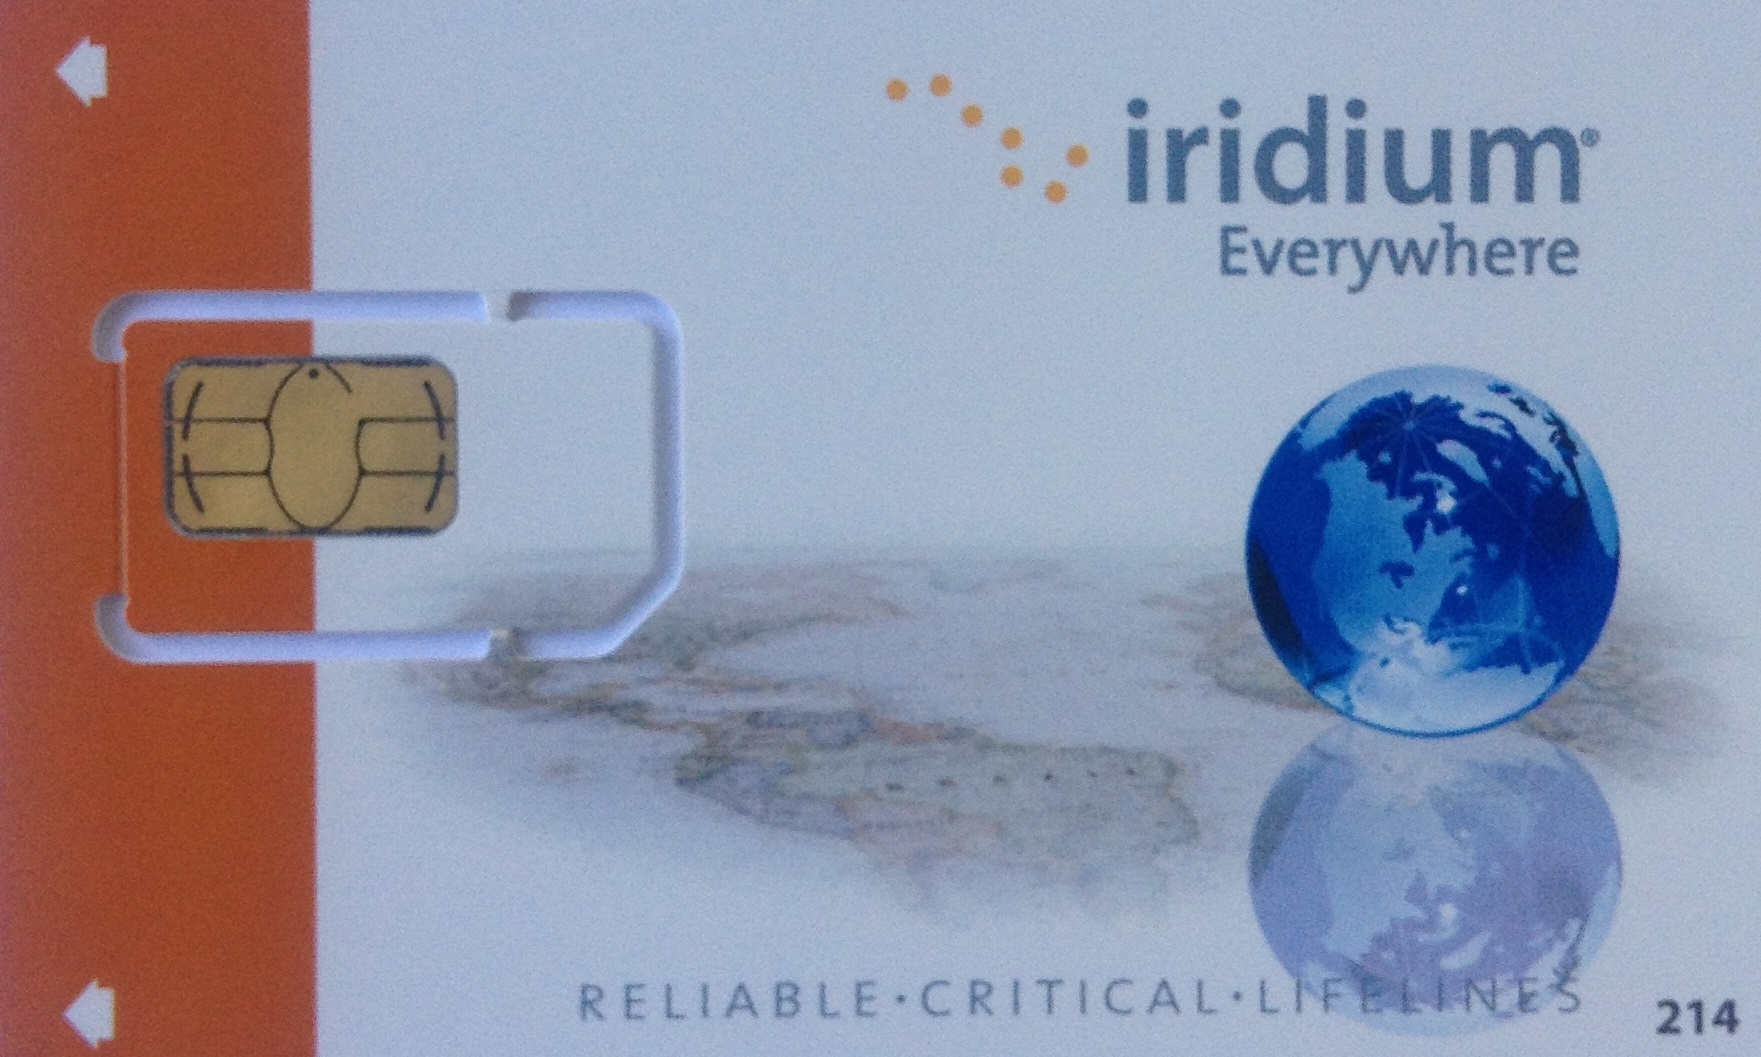 SIM kort til Iridium telefon- Post paid